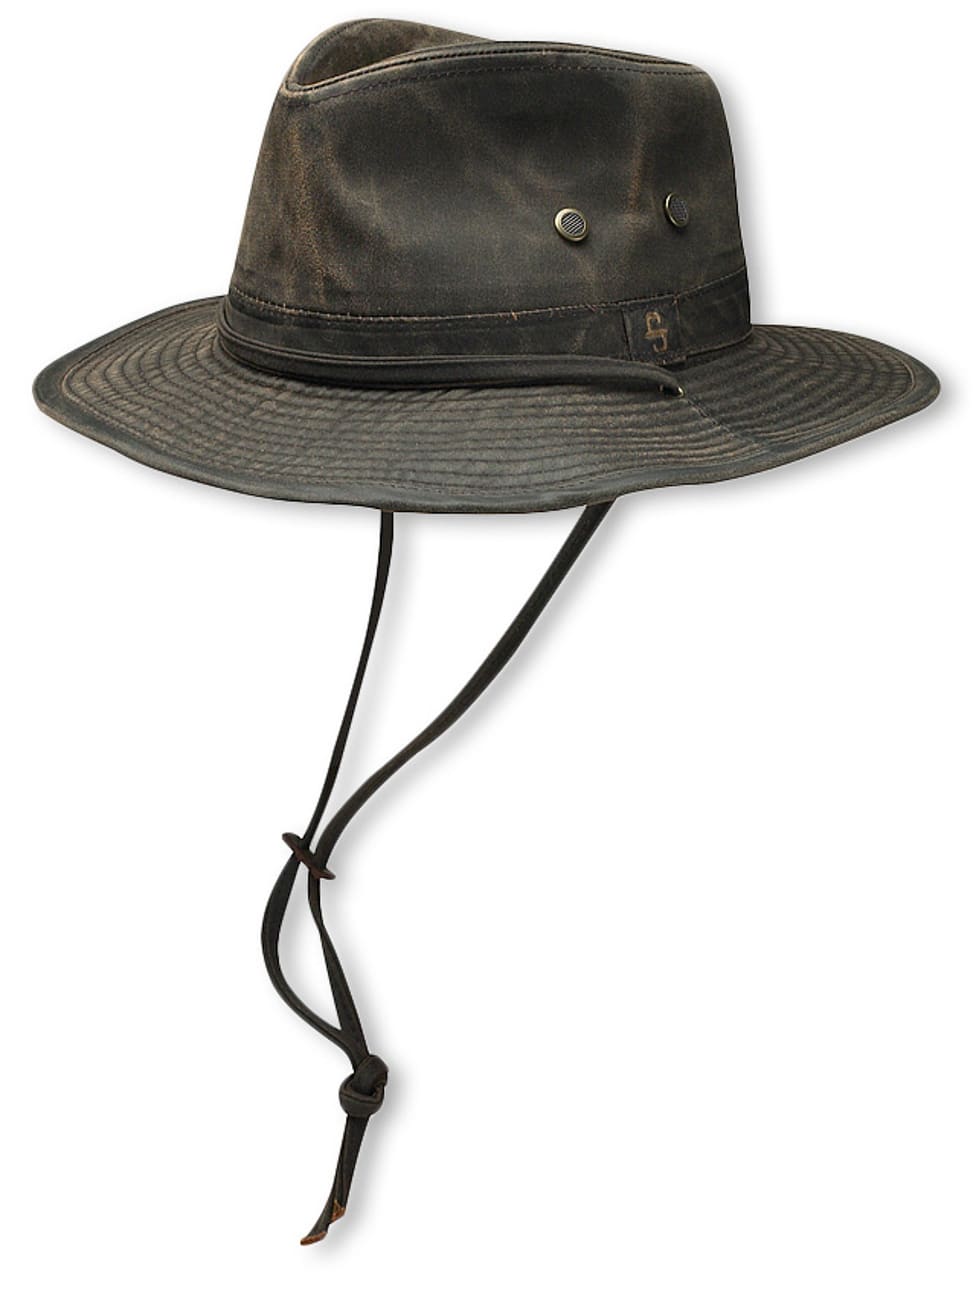 Diaz Outdoor Hat by Stetson, EUR 69,00 --> Hats, caps & beanies shop ...